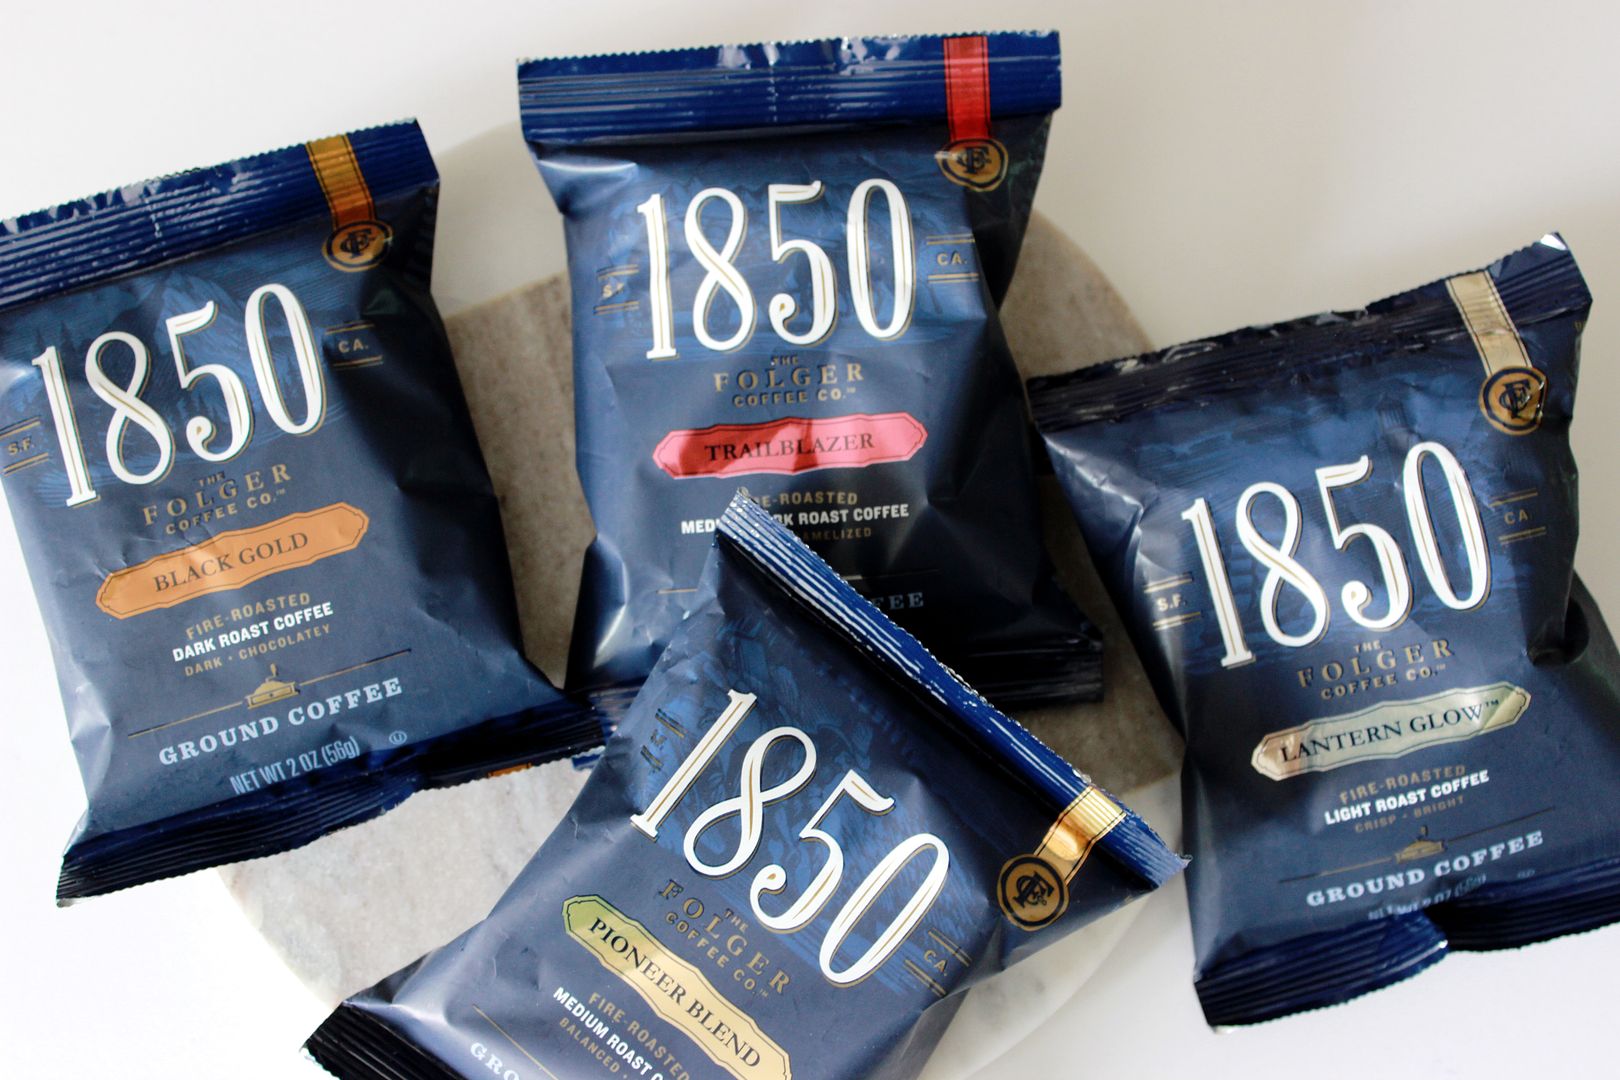 1850 Brand Coffee varieties